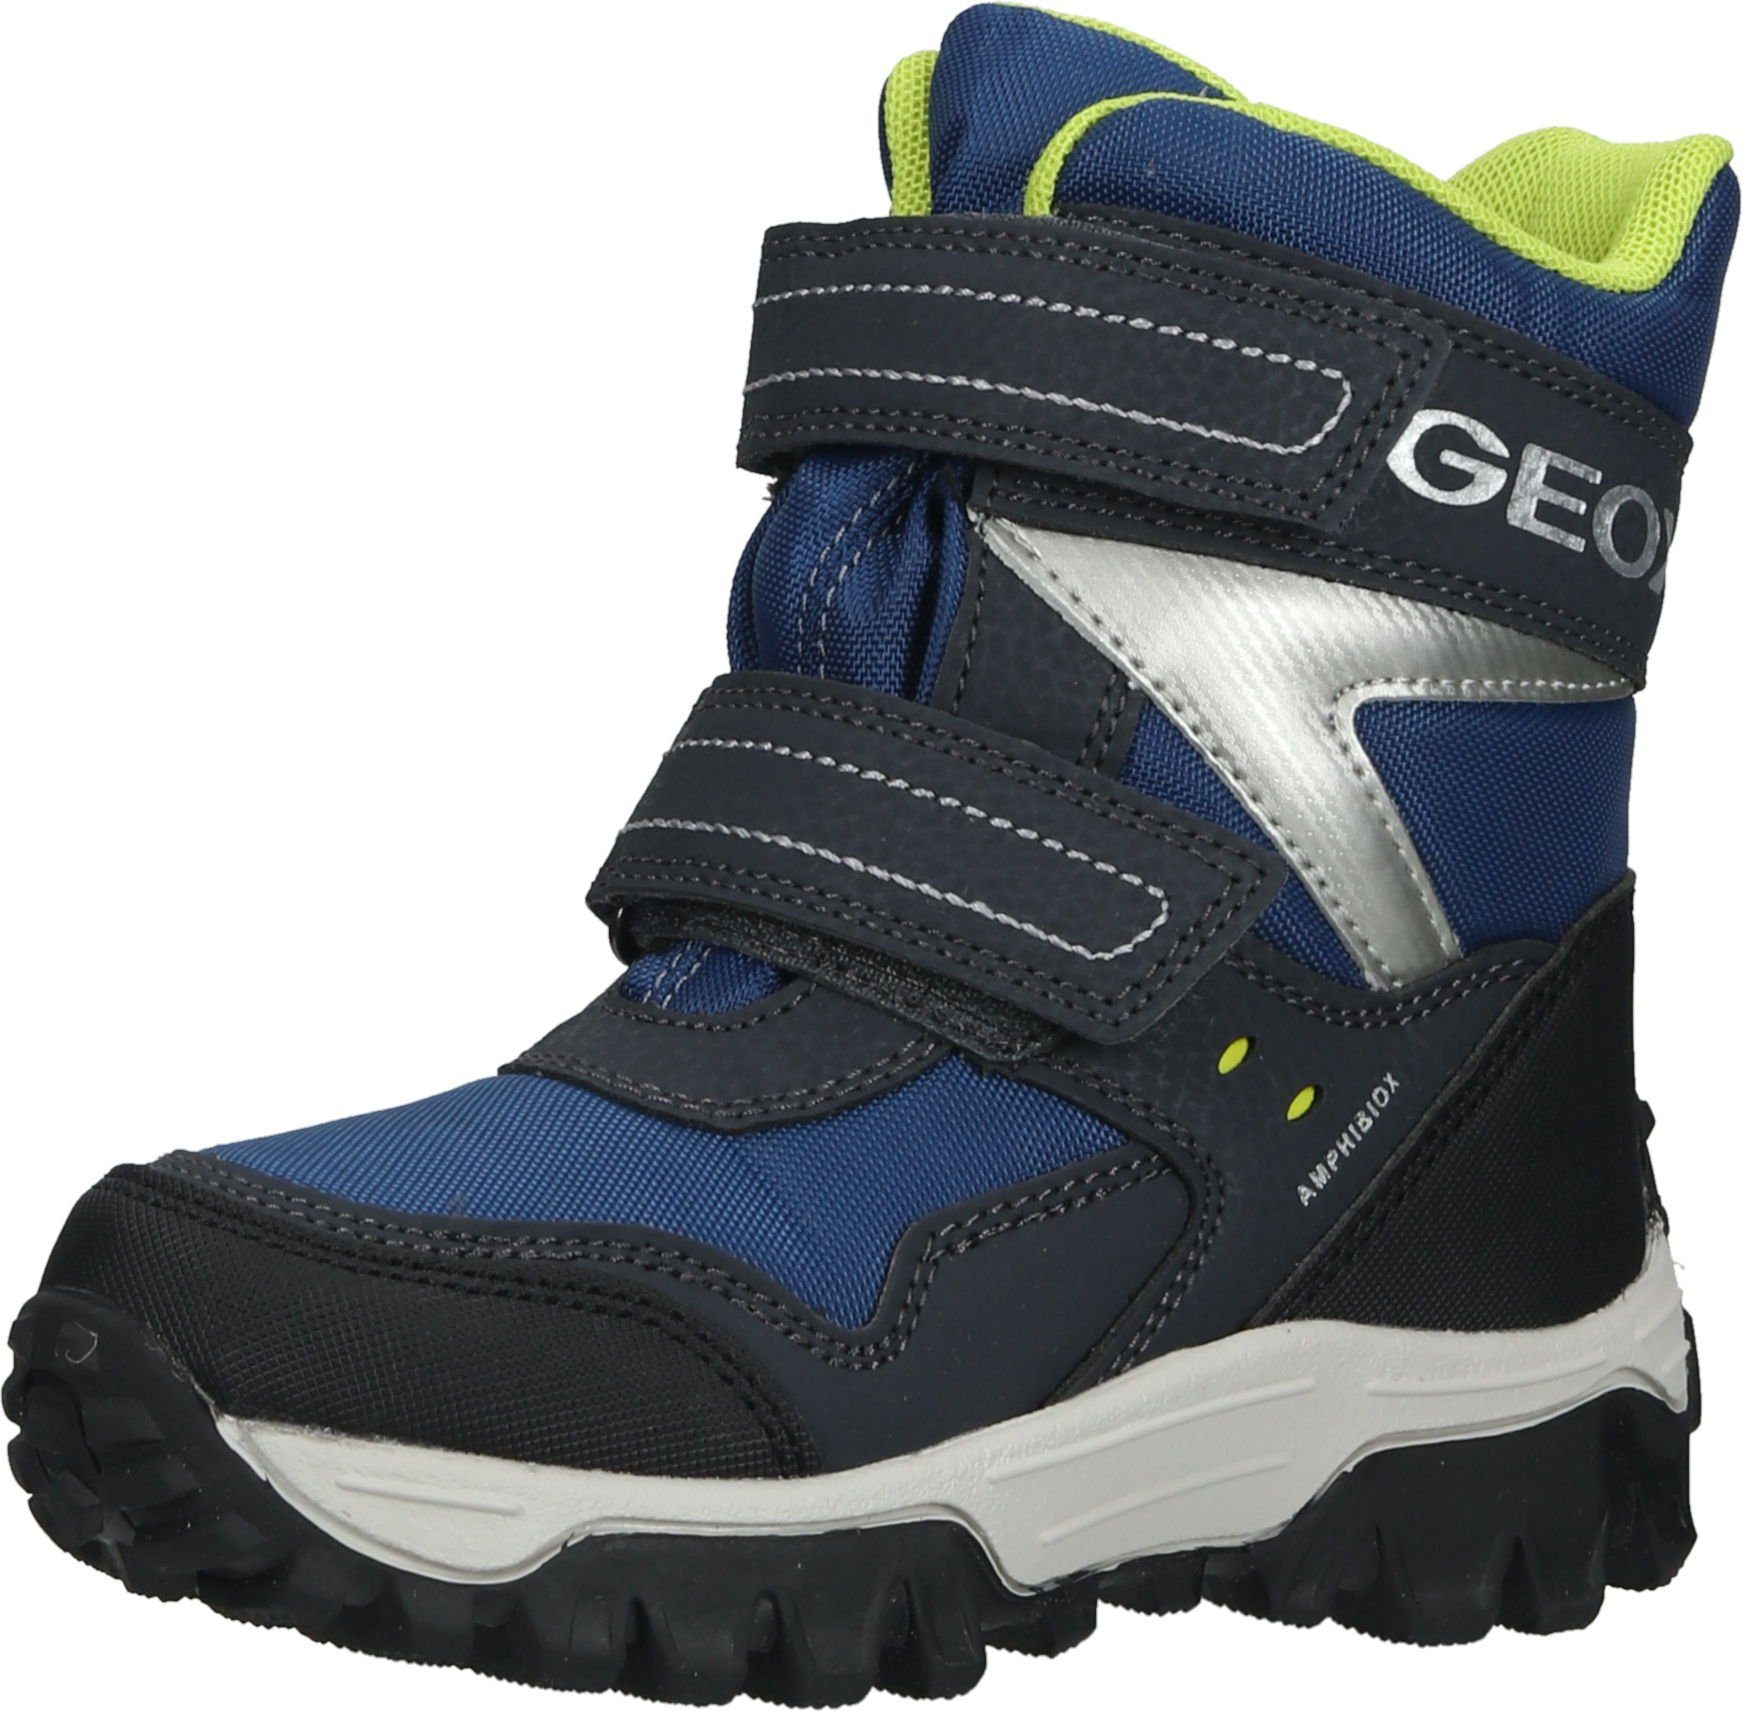 Geox Jungenschuhe » Geox Schuhmode online kaufen | OTTO